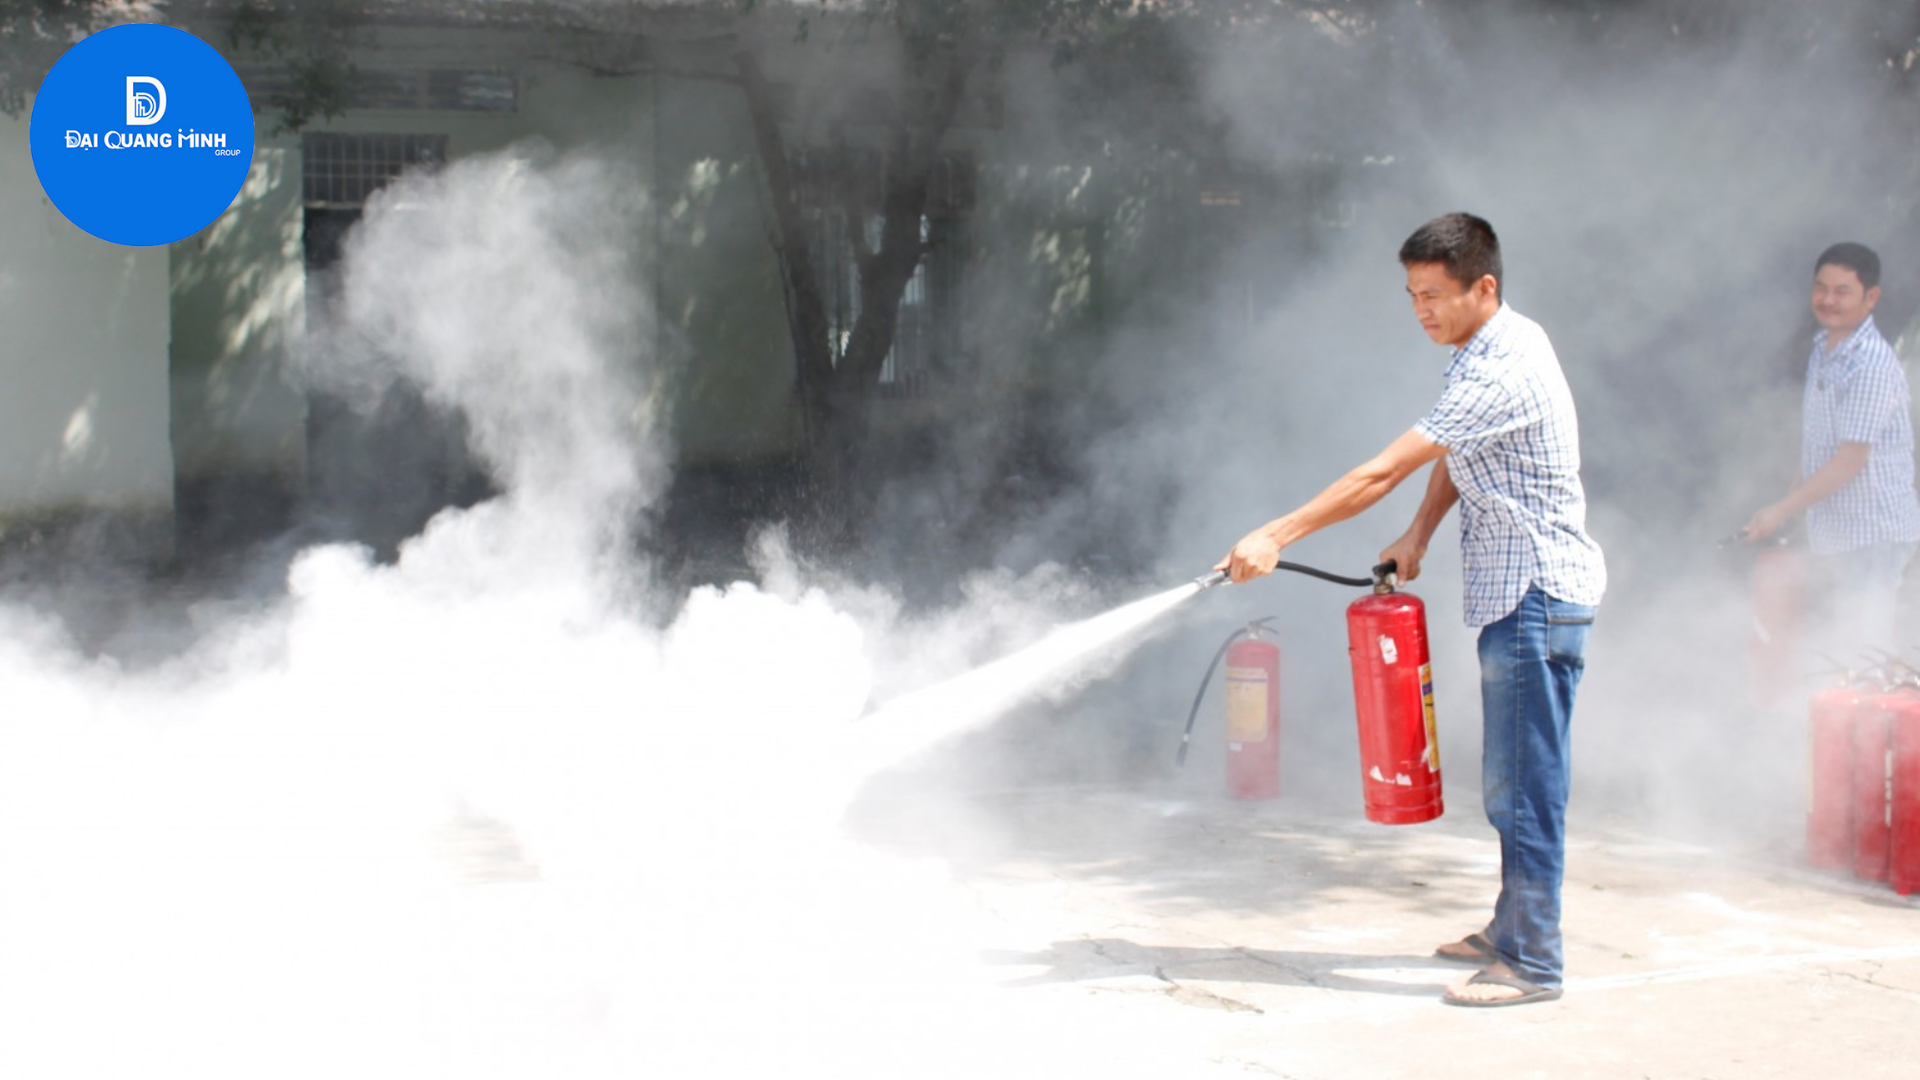 Bình chữa cháy bột chính hãng - Giao hàng nhanh chóng tại Đại Quang Minh